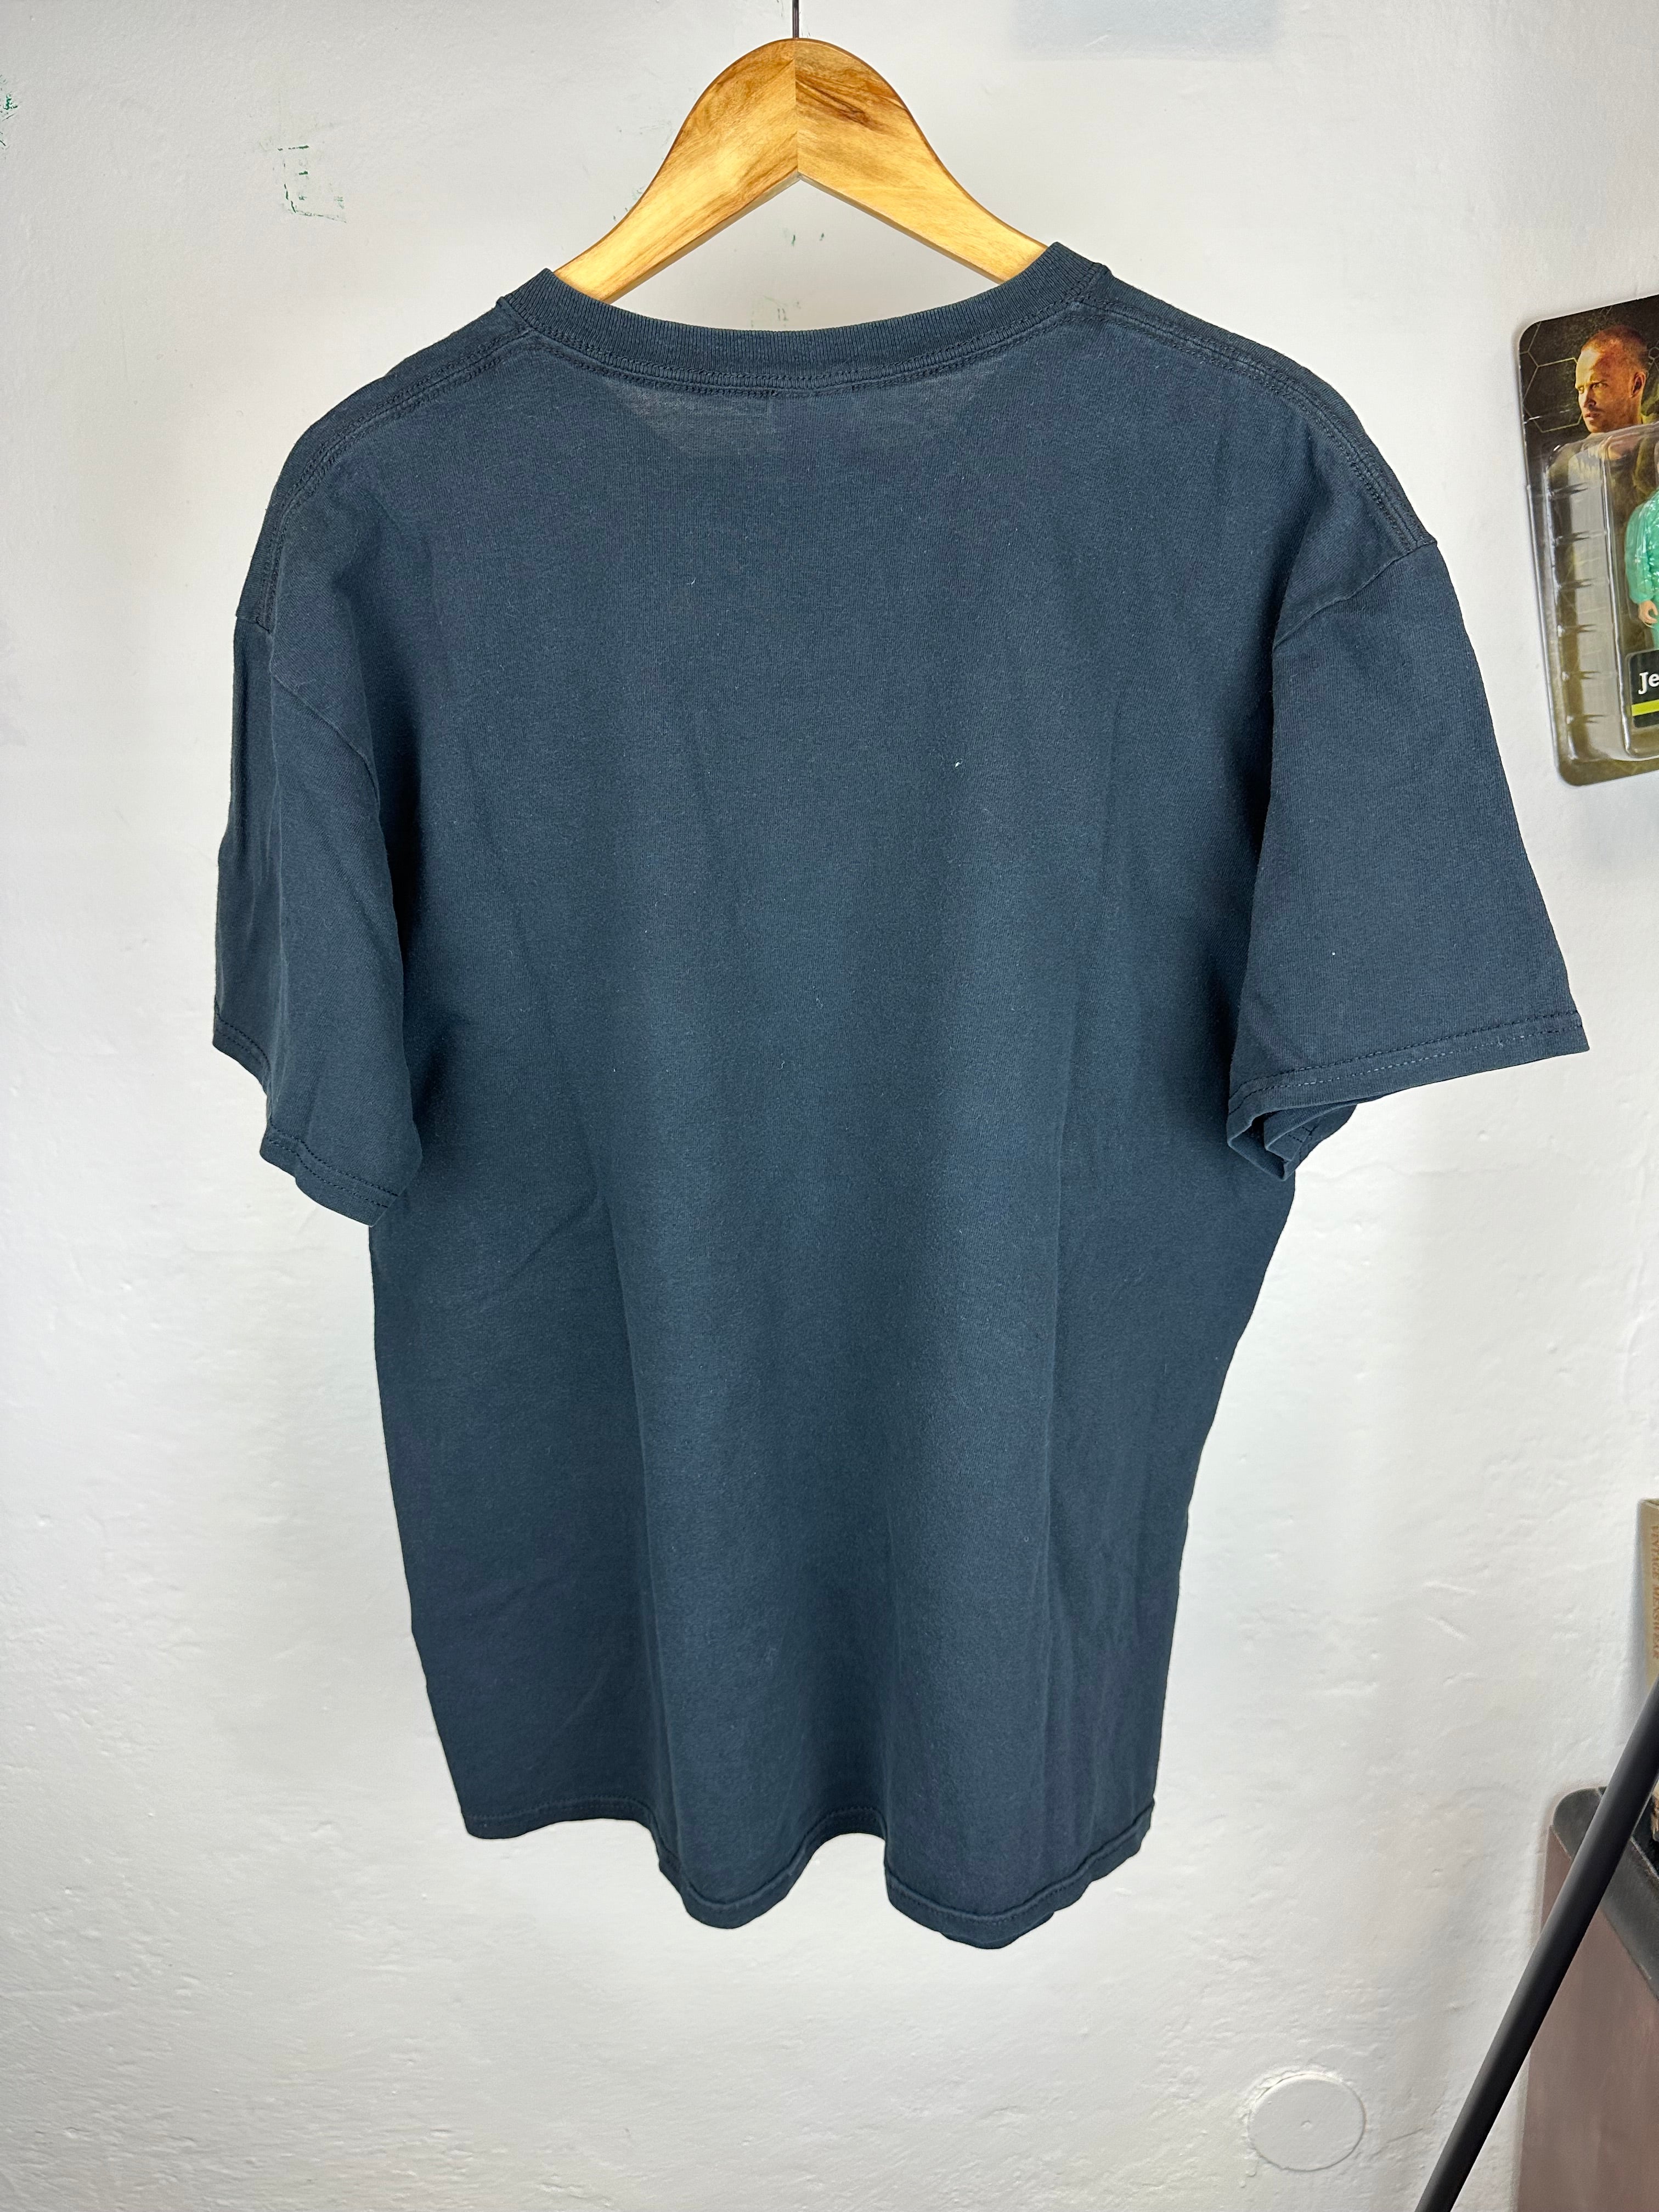 Vintage Pantera t-shirt - size L